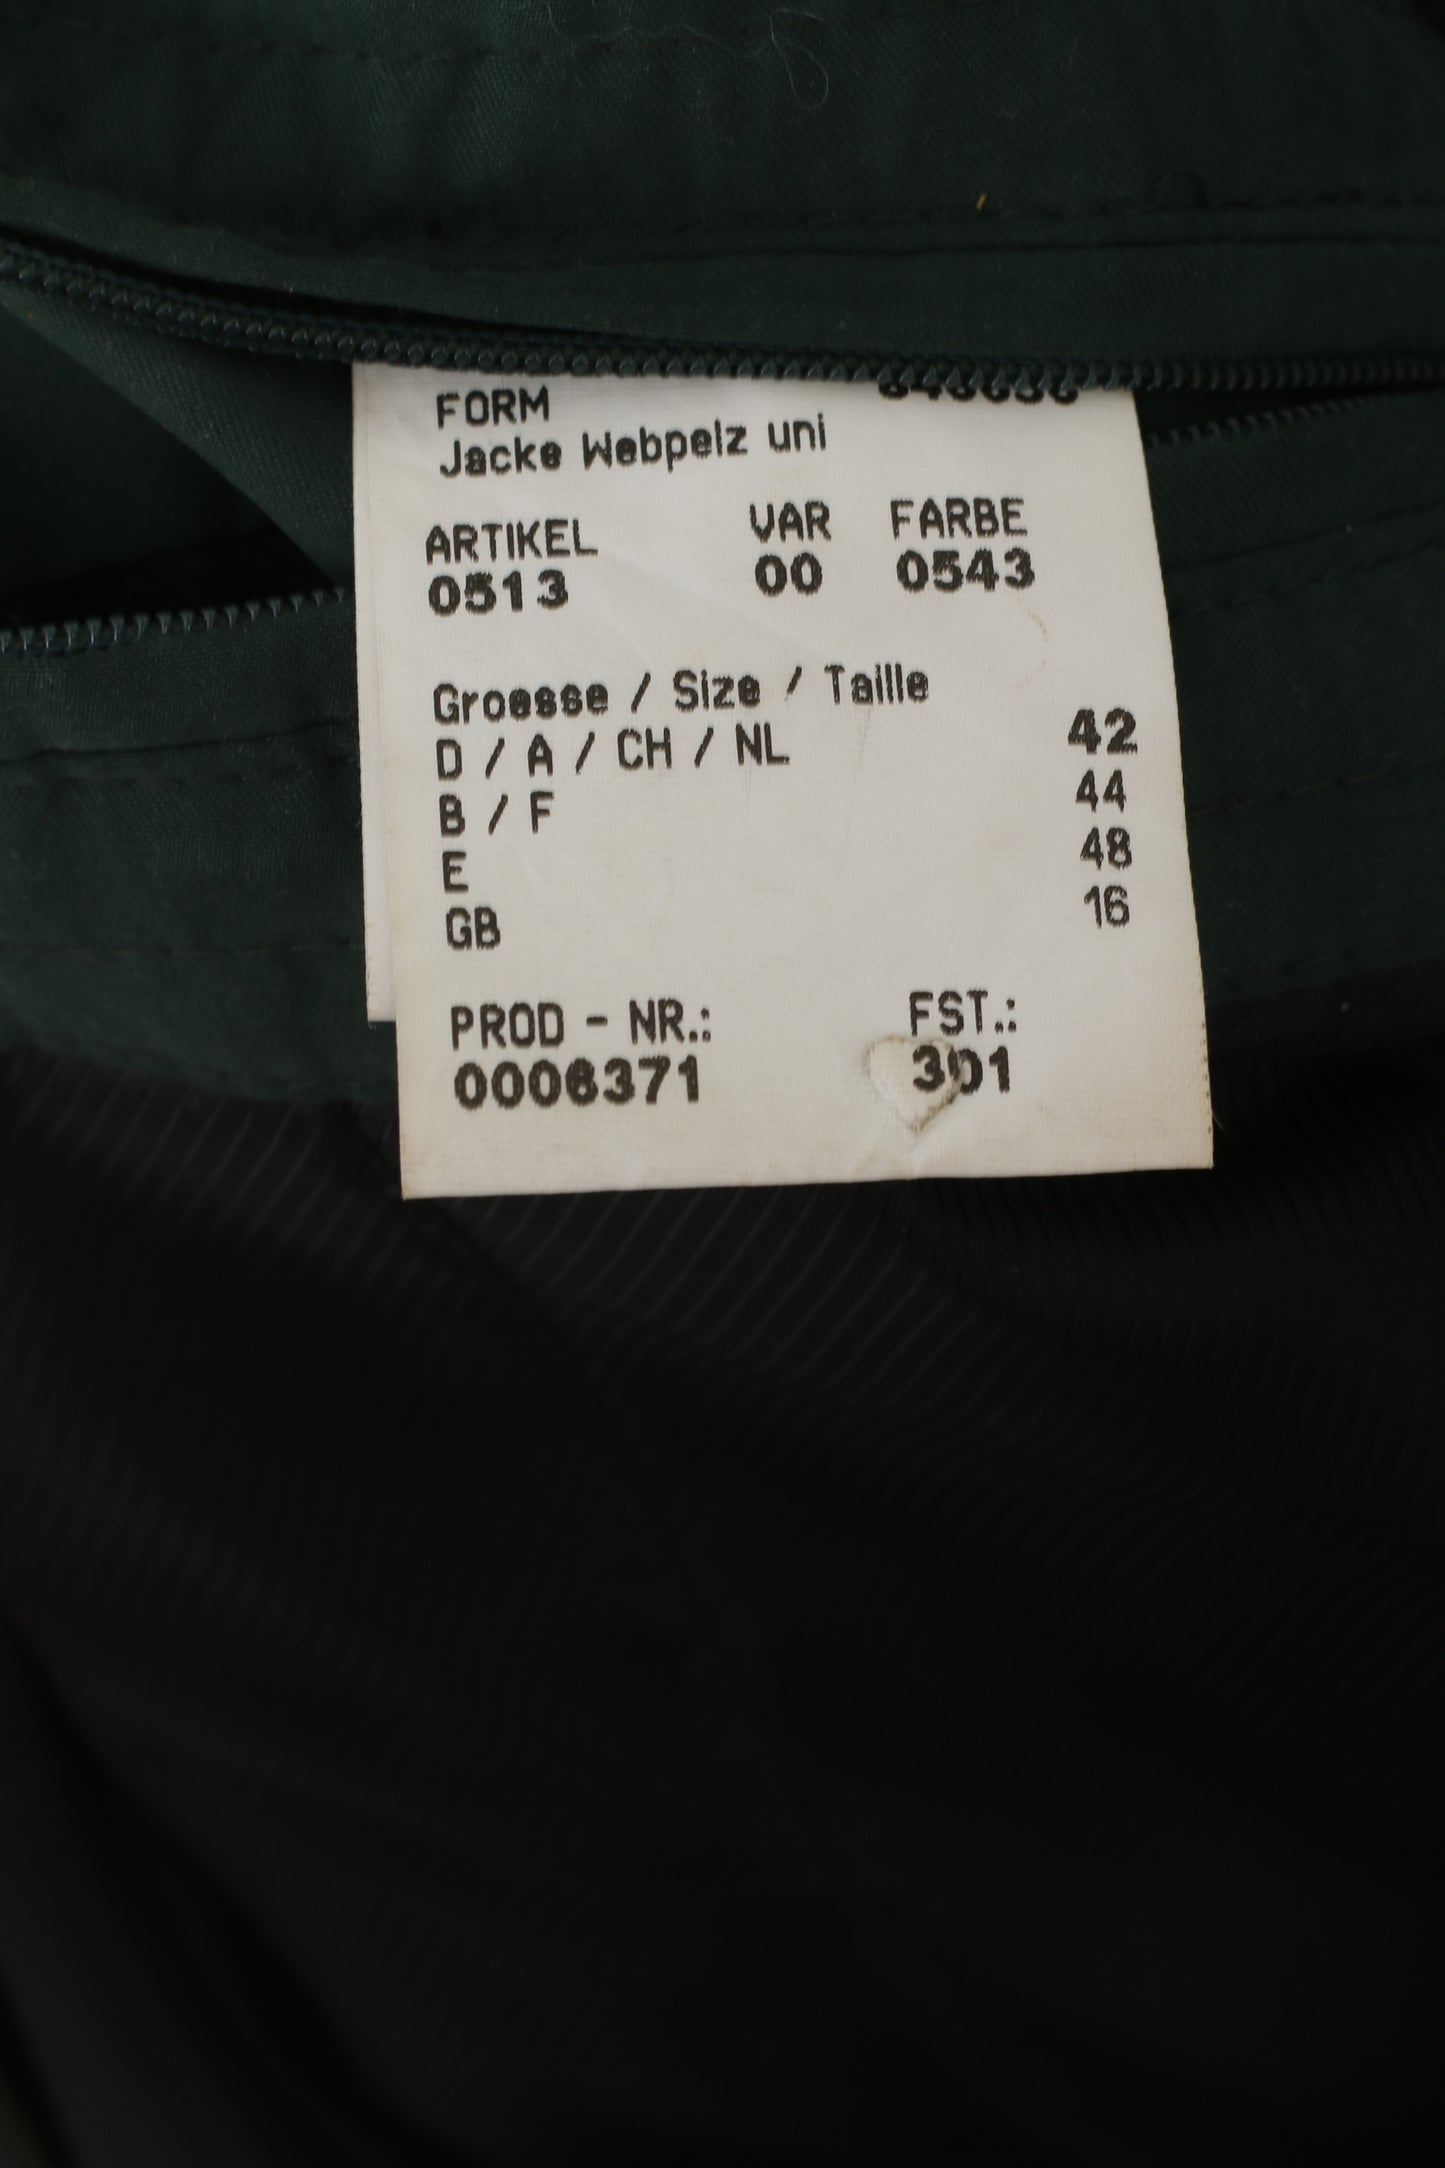 Baronia Von Gollas Women 16 42 XL Jacket Green Nylon Vintage Tecnopile Outdoor Top